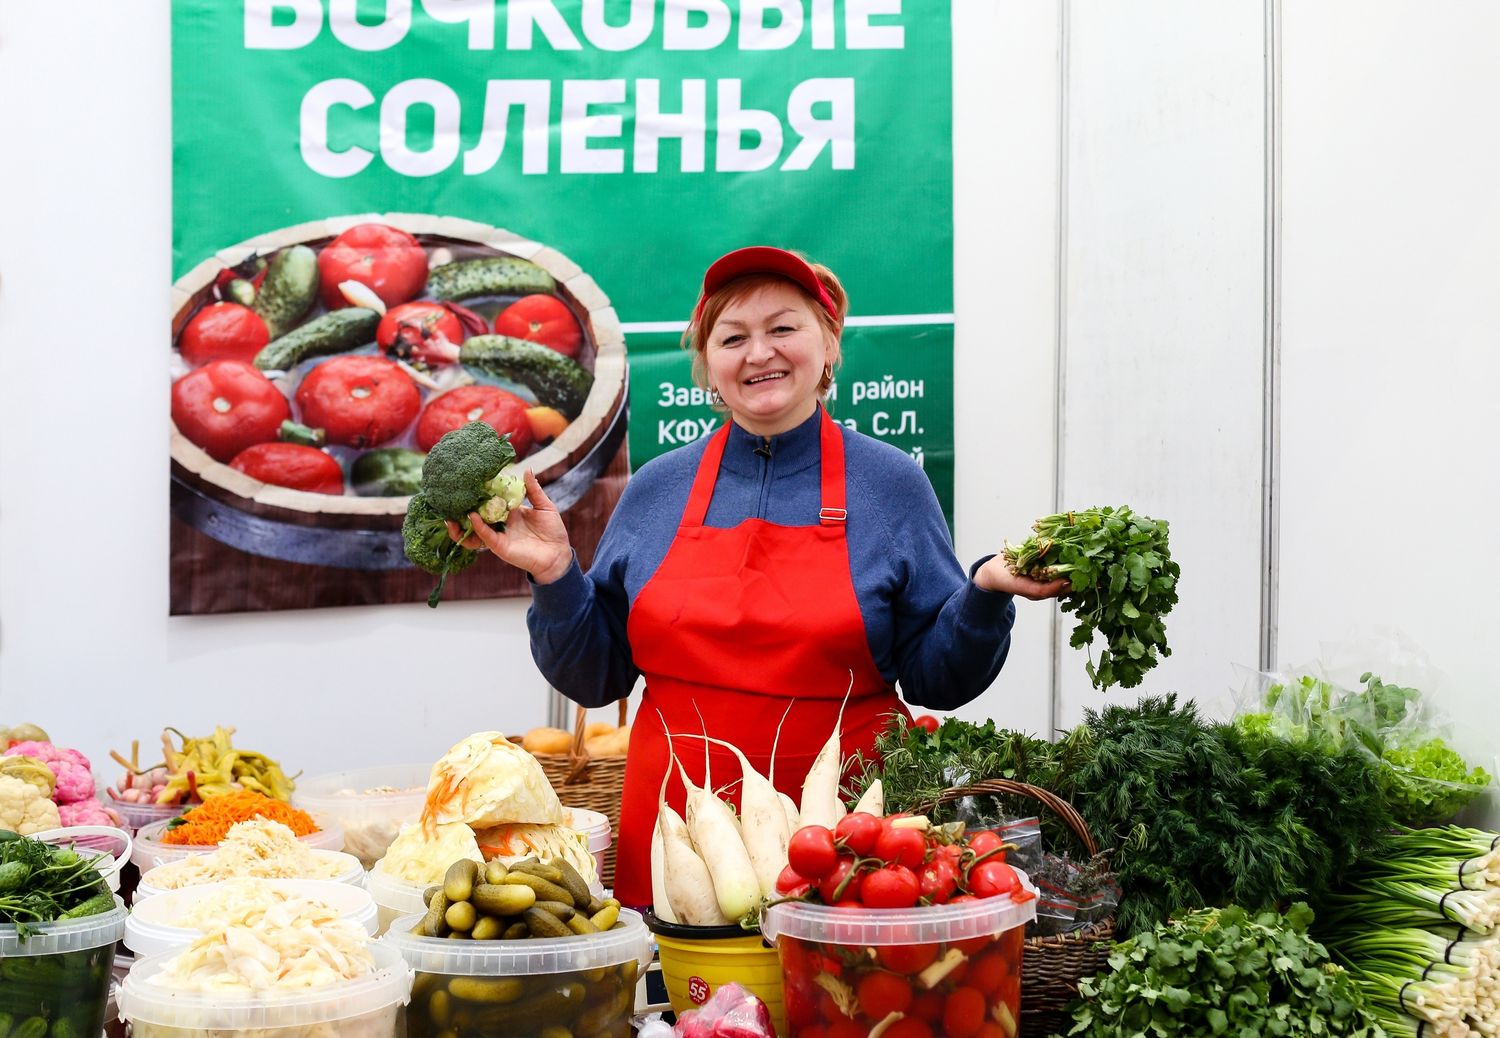 Жителей Ижевска приглашают на Всероссийскую ярмарку за вкусными и интересными покупками 